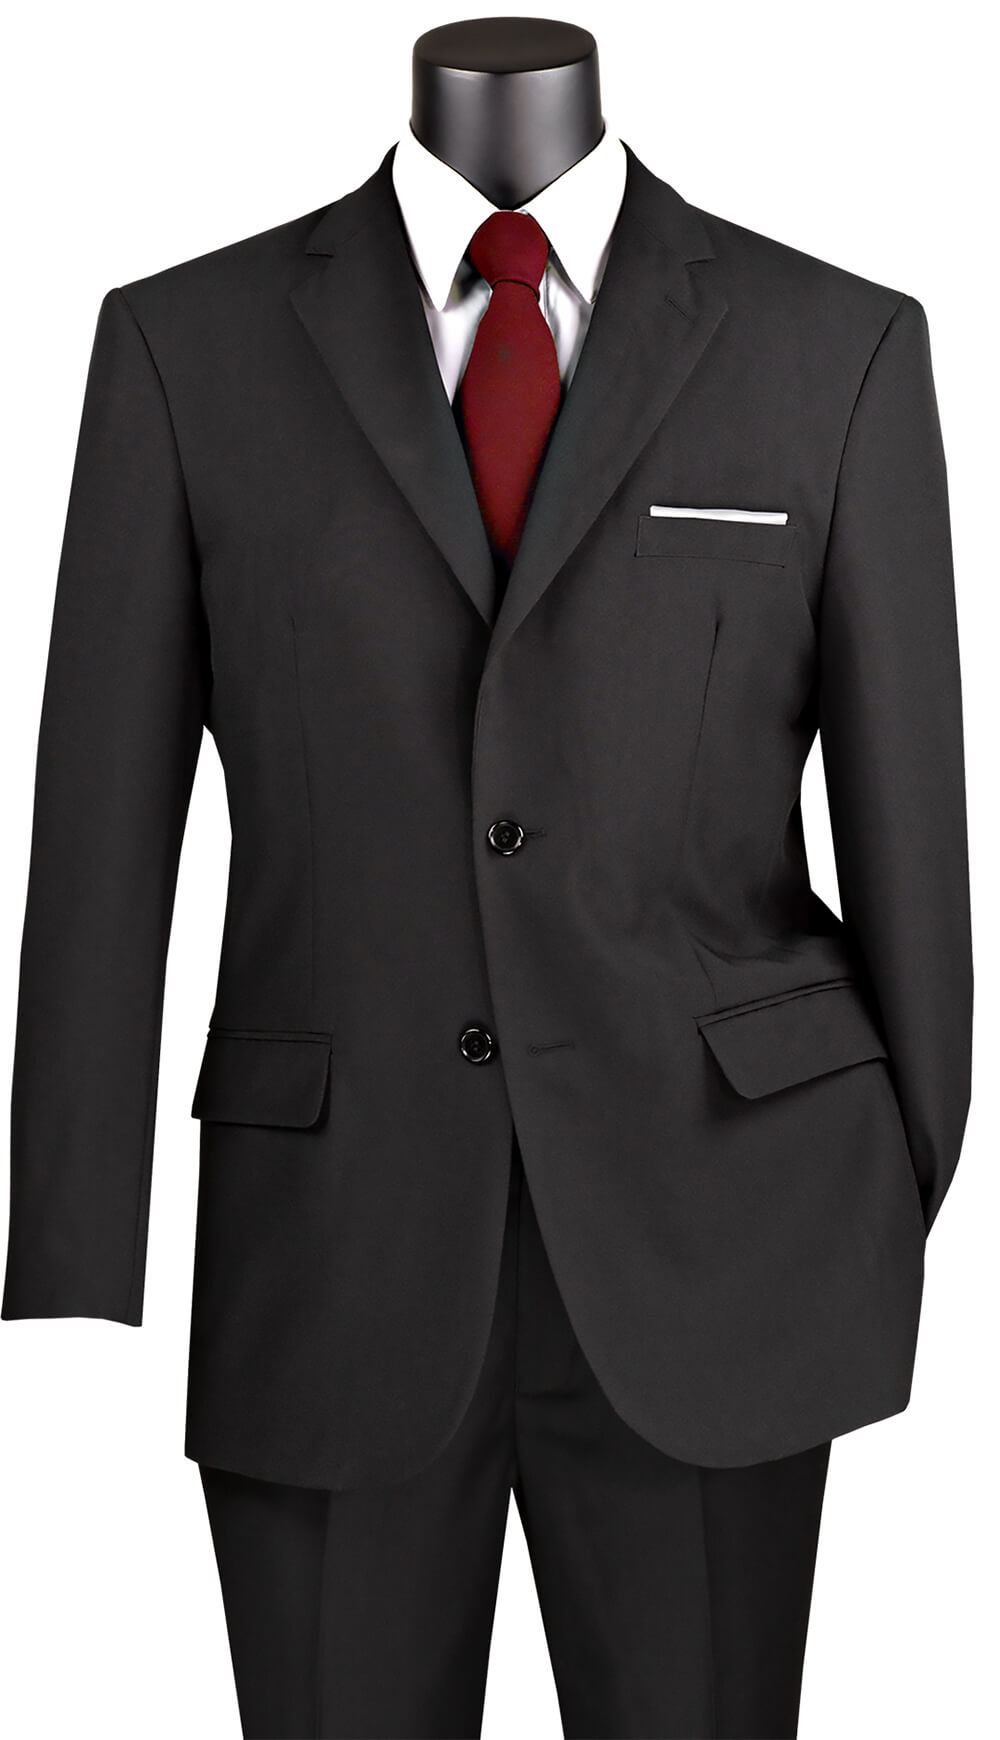 Vinci Suit 2PP-Black - Church Suits For Less